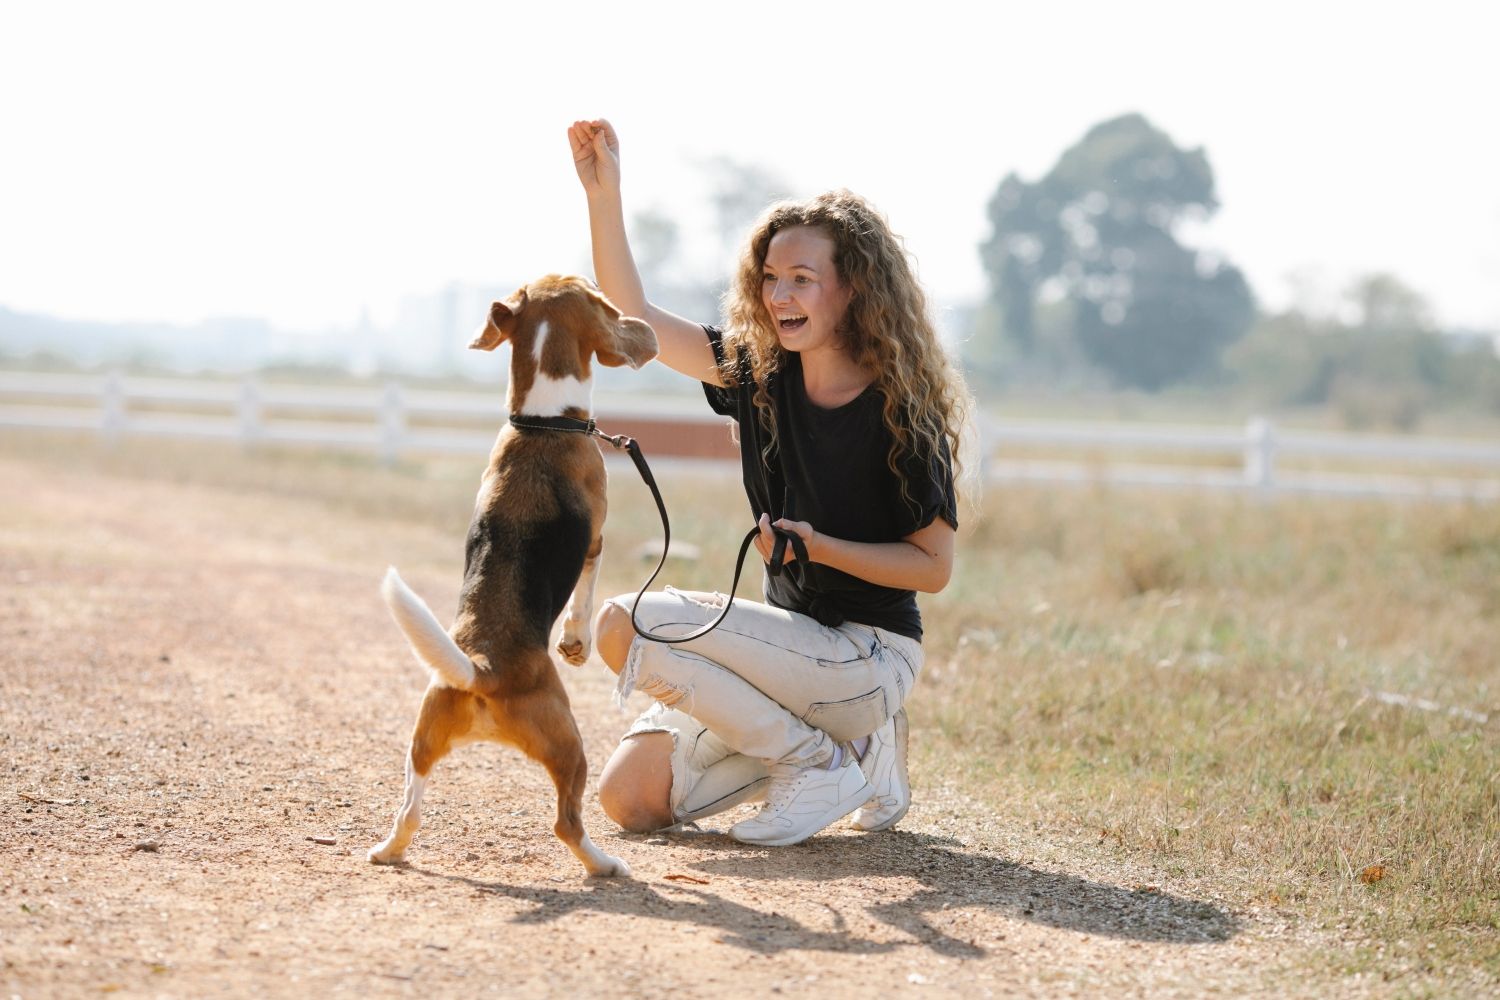 Una voluntaria de Préstame tu perrito juega con una mascota / PEXELS